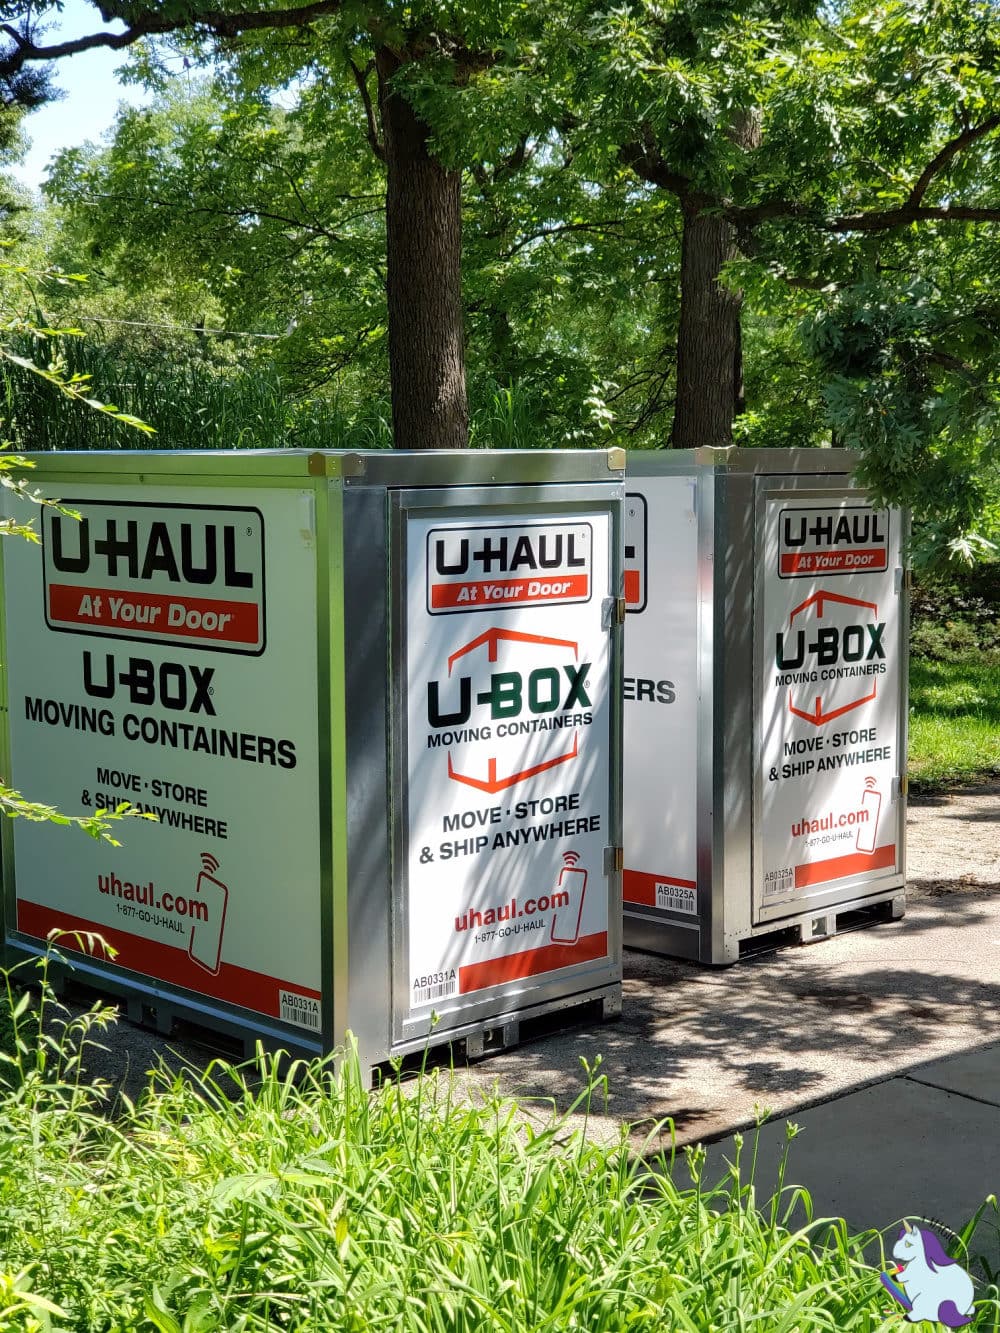 U-Haul U-Box Containers